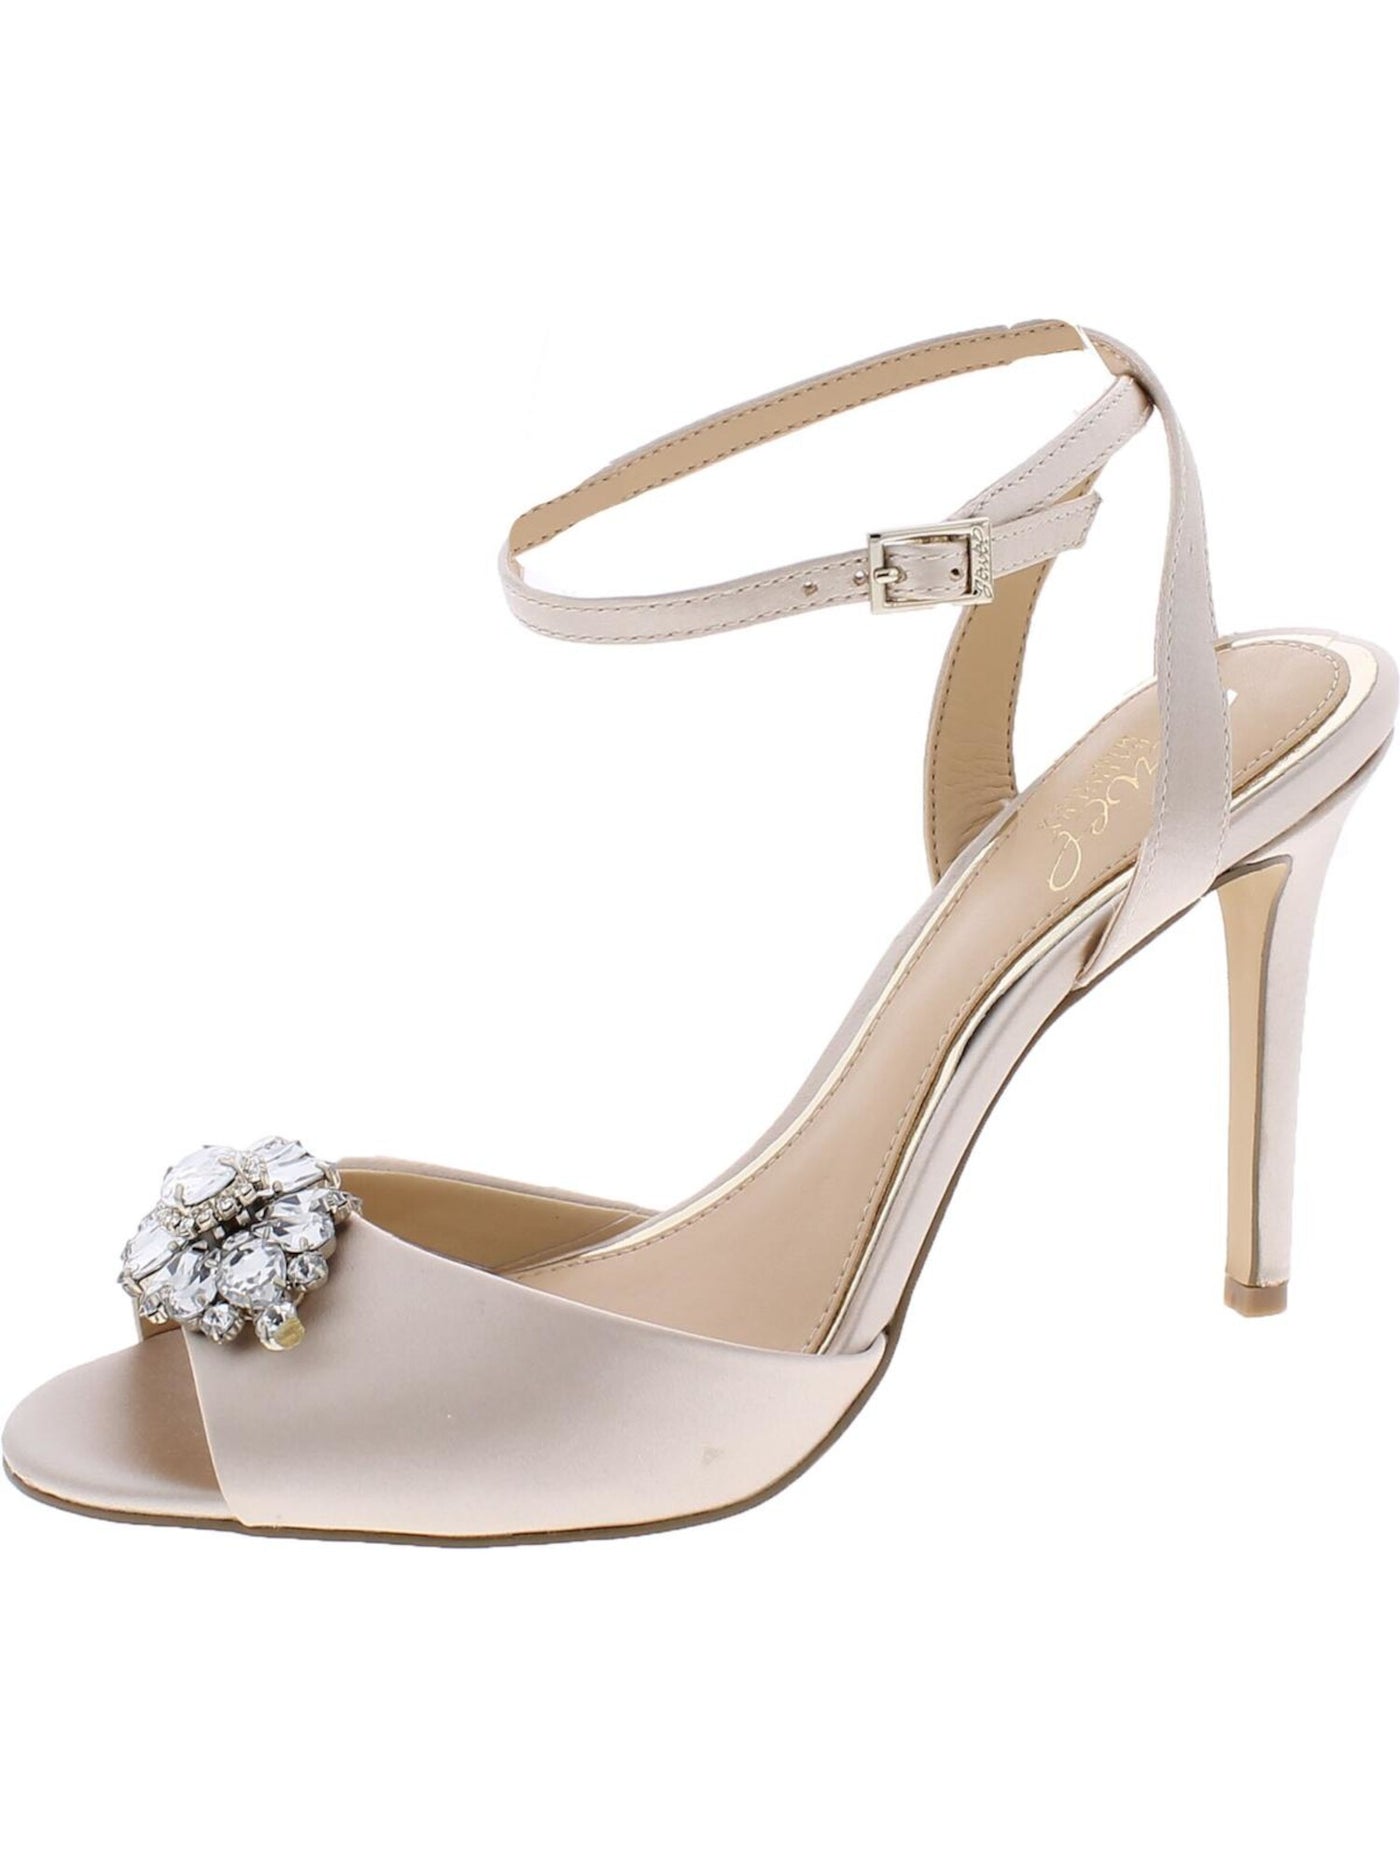 BADGLEY MISCHKA Womens Beige Embellished Ankle Strap Hayden Round Toe Stiletto Buckle Dress Sandals Shoes 5